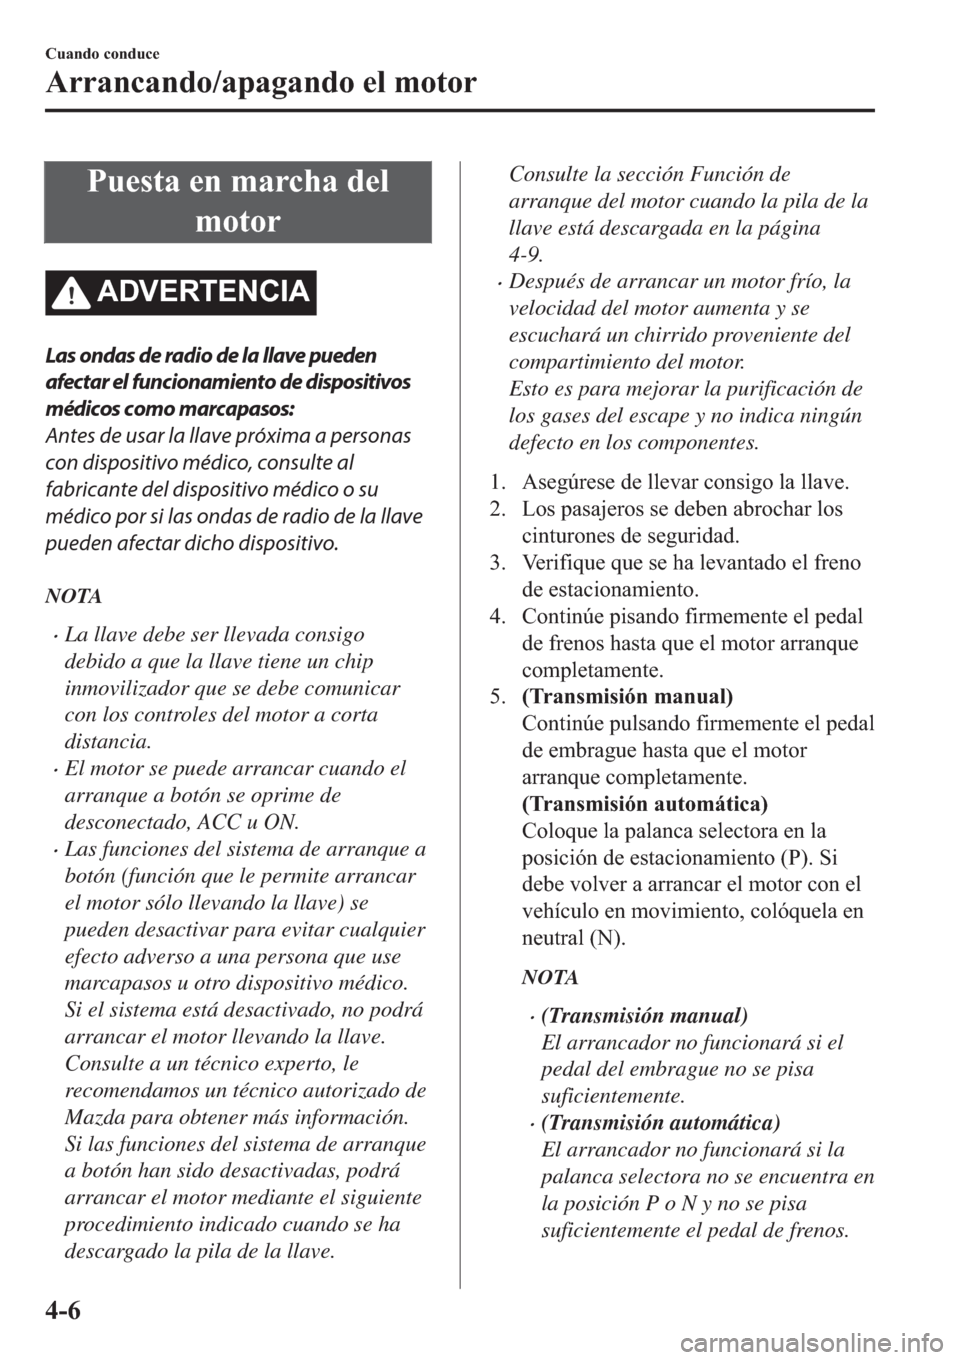 MAZDA MODEL 6 2019  Manual del propietario (in Spanish) �3�X�H�V�W�D��H�Q��P�D�U�F�K�D��G�H�O
�P�R�W�R�U
�$��9�(�5�7�(�1�&�,�$
Las ondas de radio de la llave pueden
afectar el funcionamiento de dispositivos
médicos como marcapasos:
Antes de usar la ll